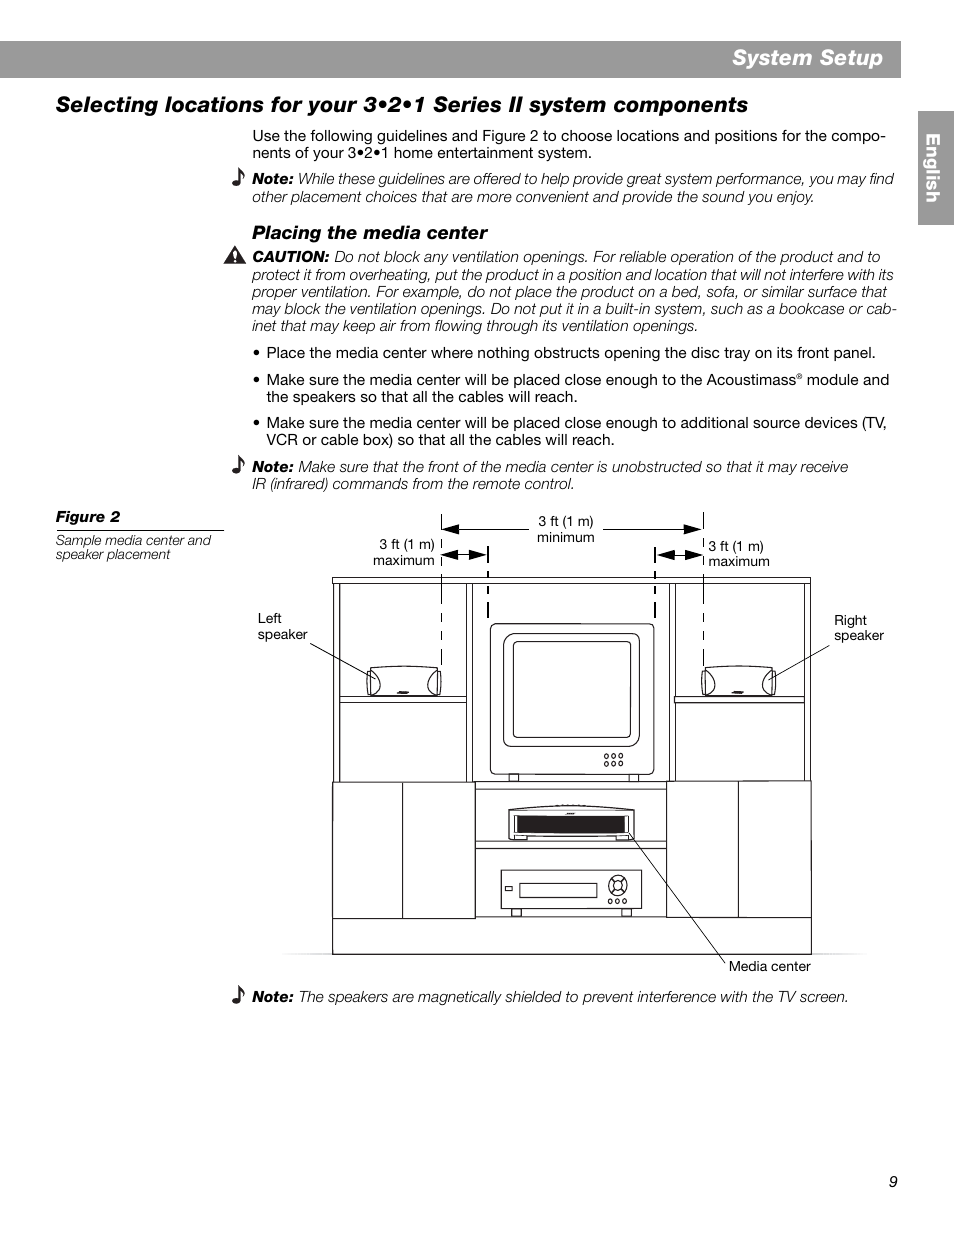 ledig stilling Vellykket skarpt System setup | Bose 3.2.1 GS Series II User Manual | Page 9 / 180 |  Original mode